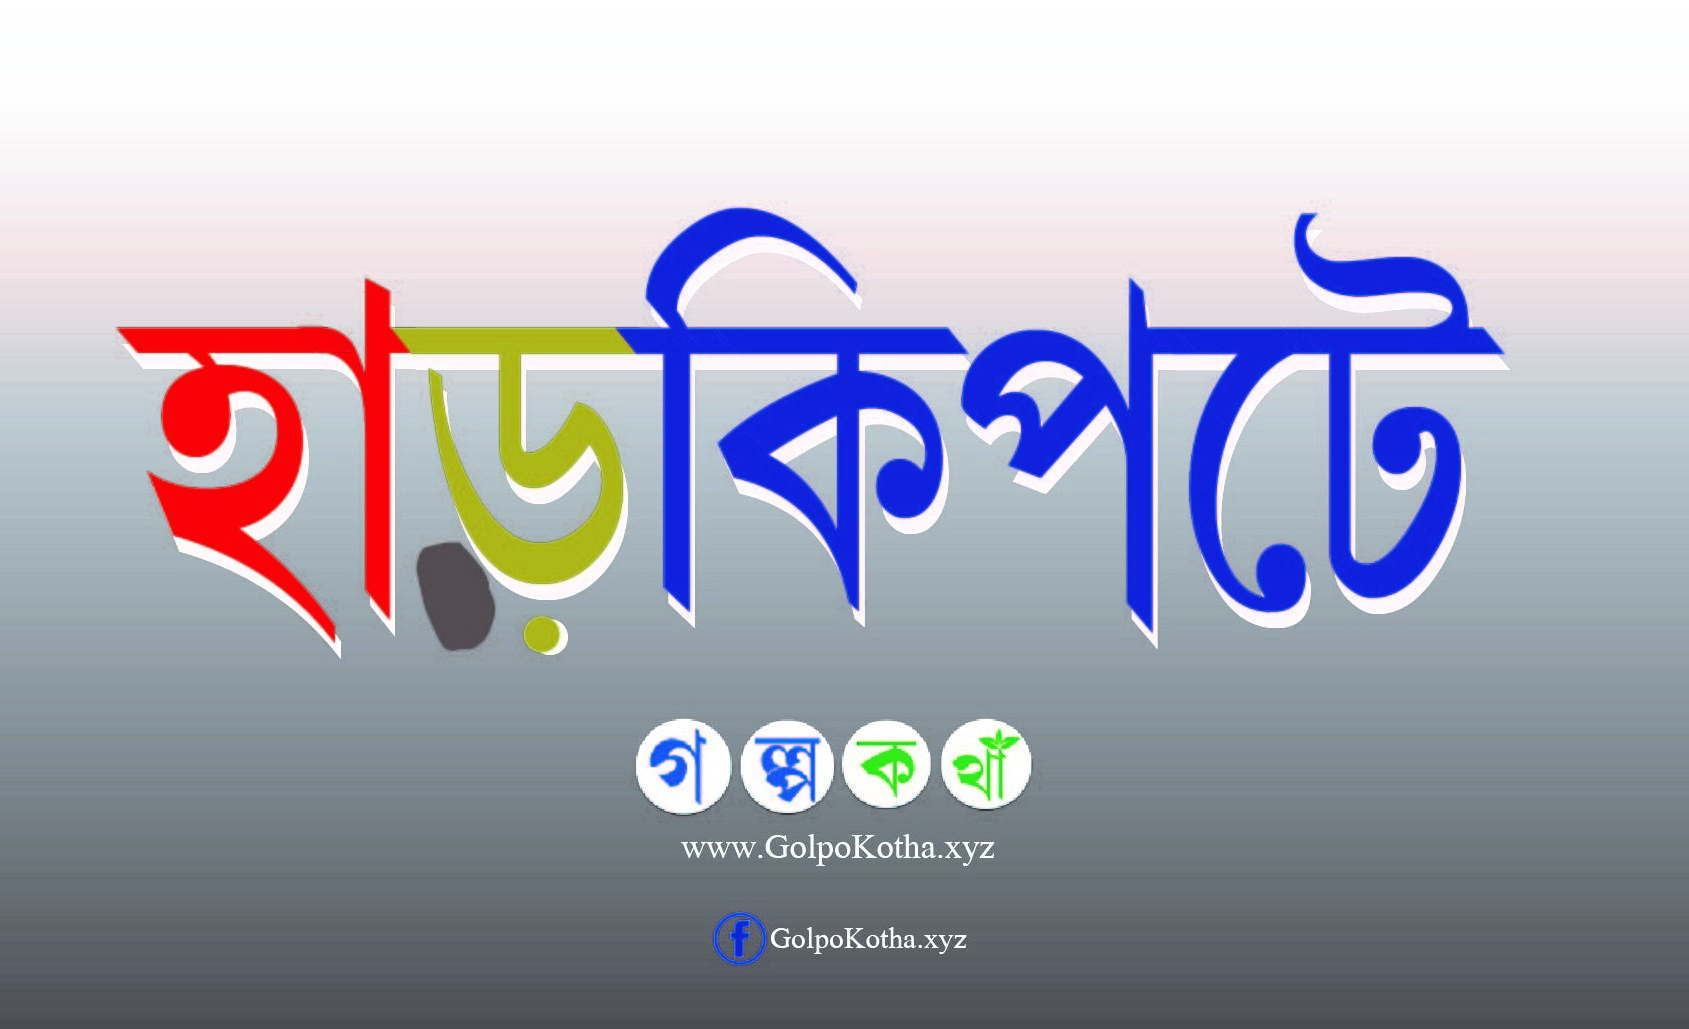 হাড়কিপটে - বাংলা হাঁসির গল্প । Bangla Hashir Golpo Harkipta, funny story